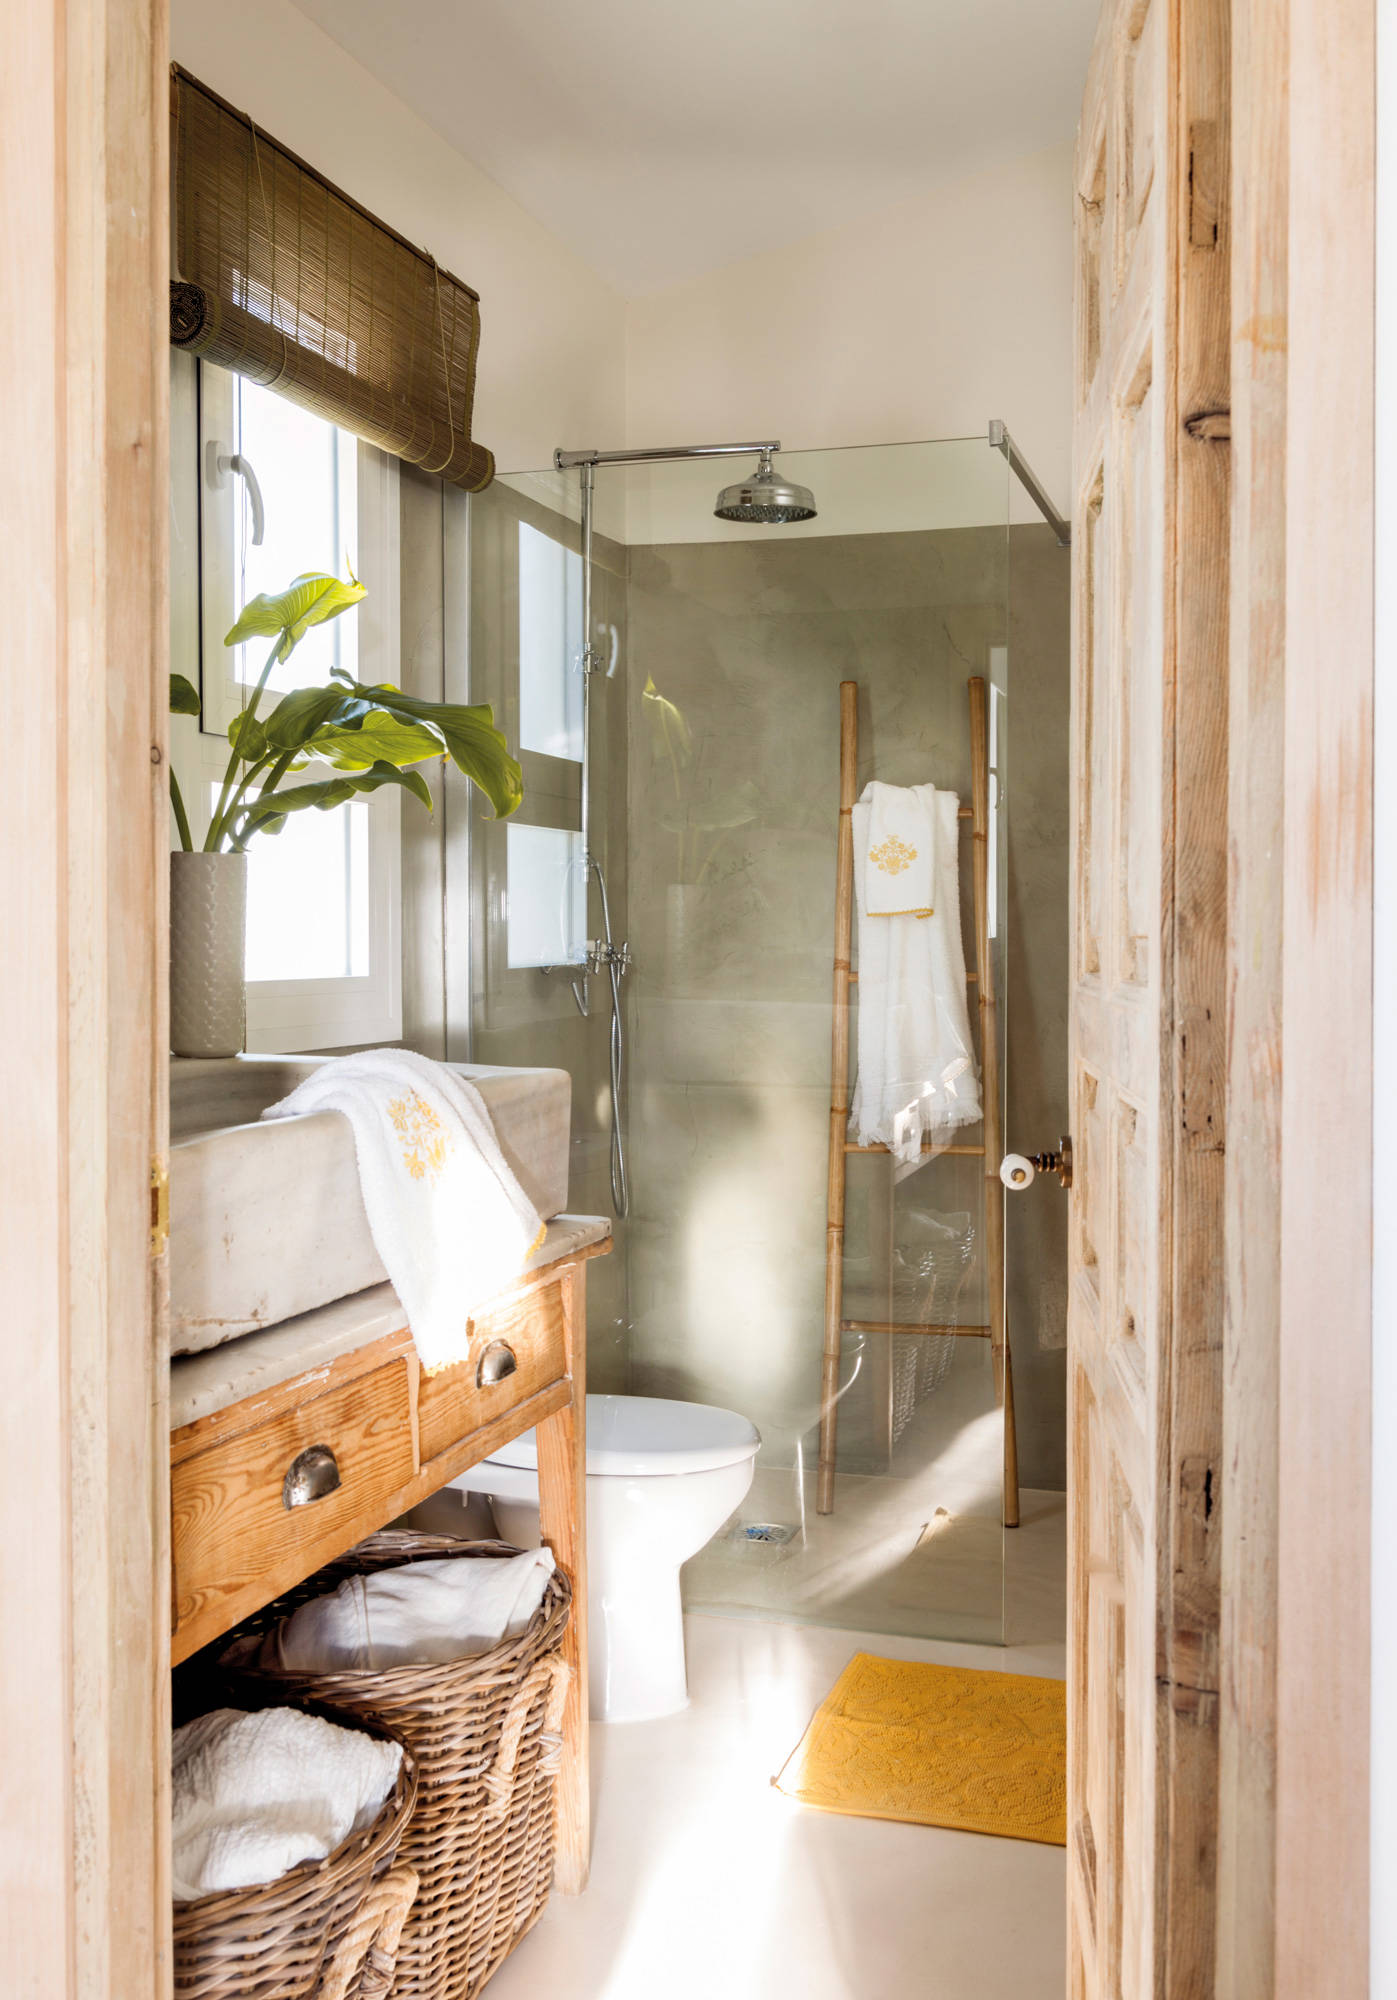 Baño pequeño con mueble recuperado de madera y ducha con mampara transparente.